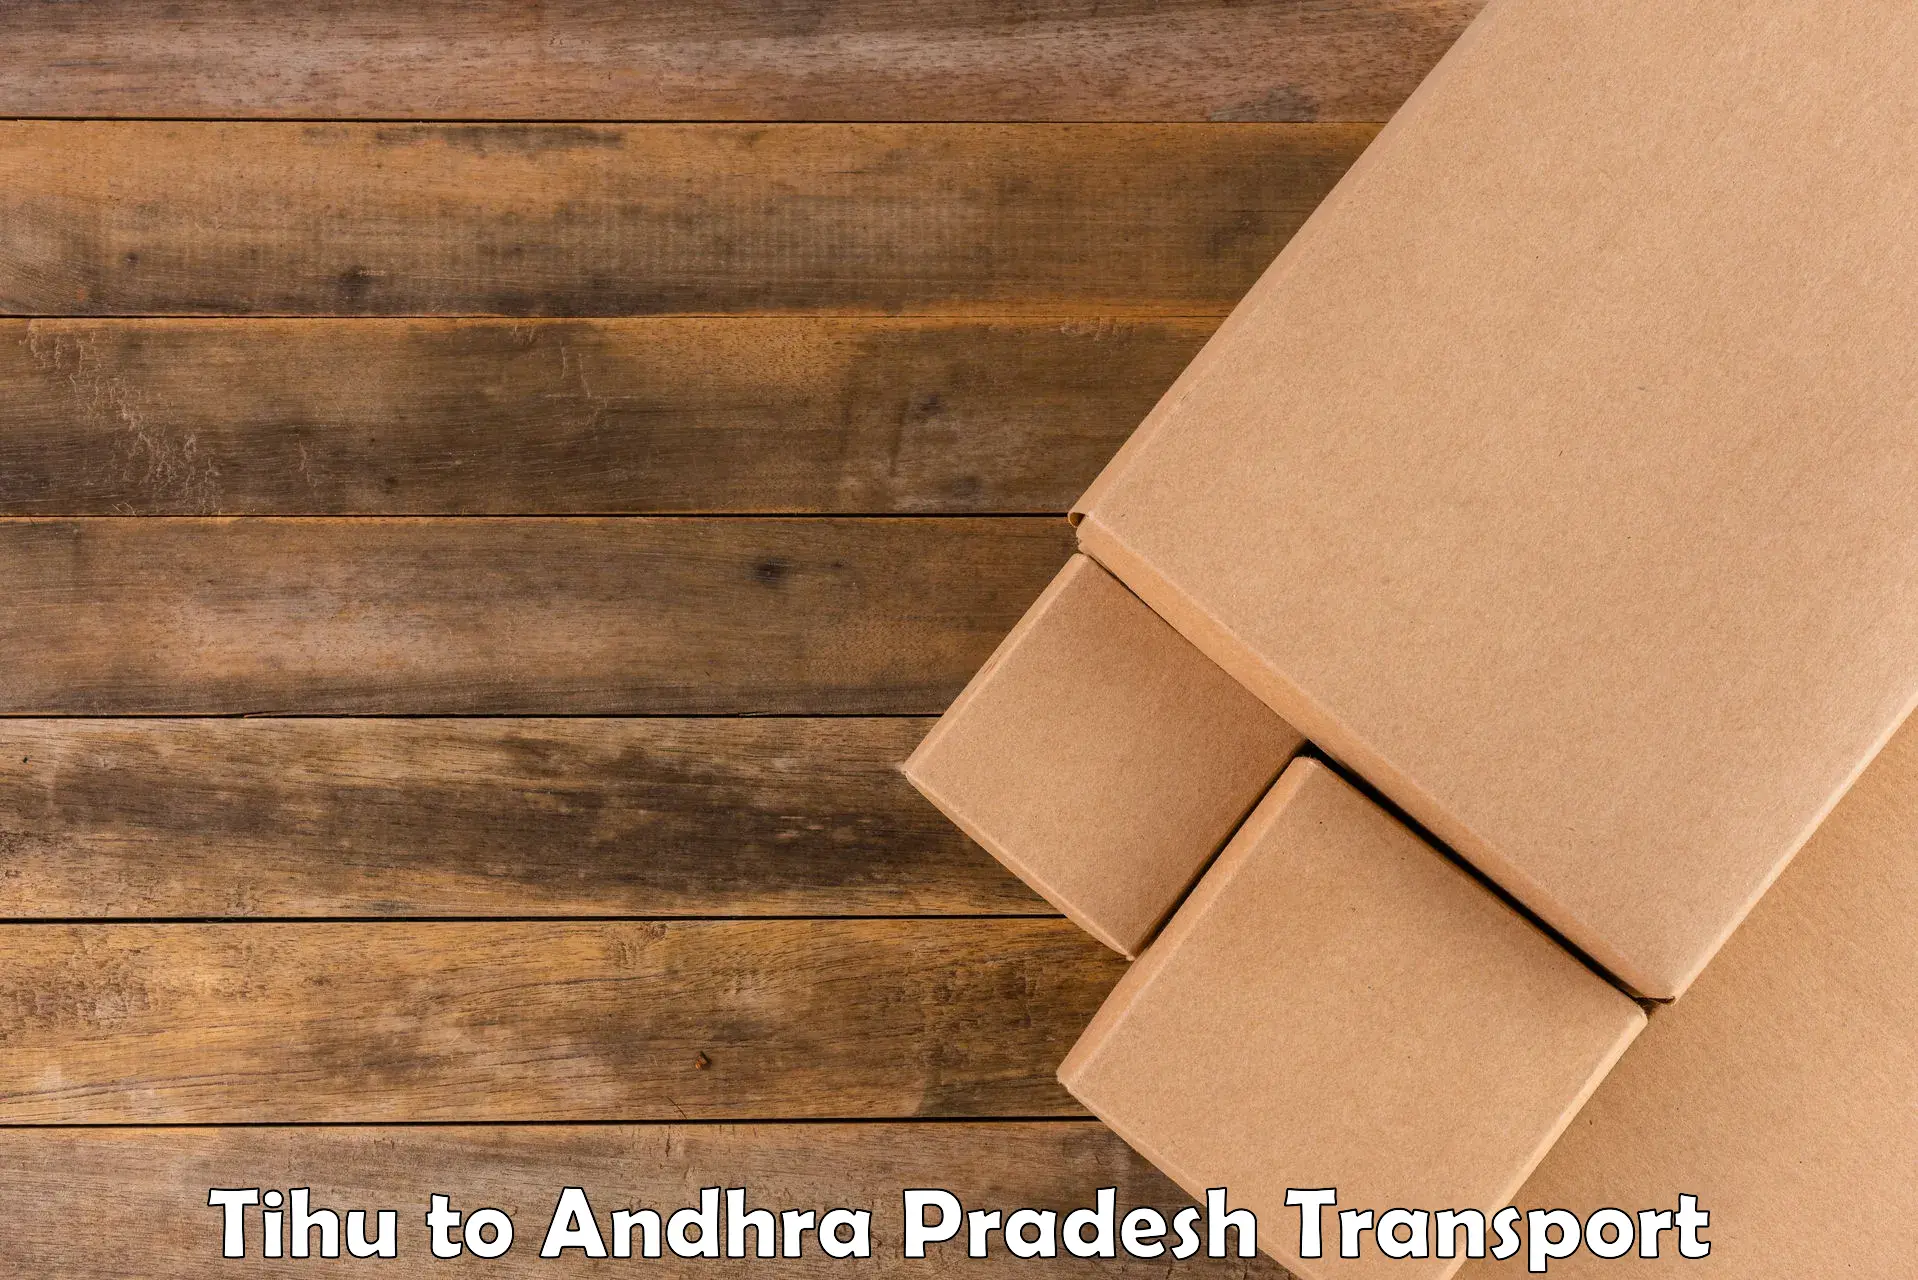 Transport in sharing Tihu to Andhra Pradesh